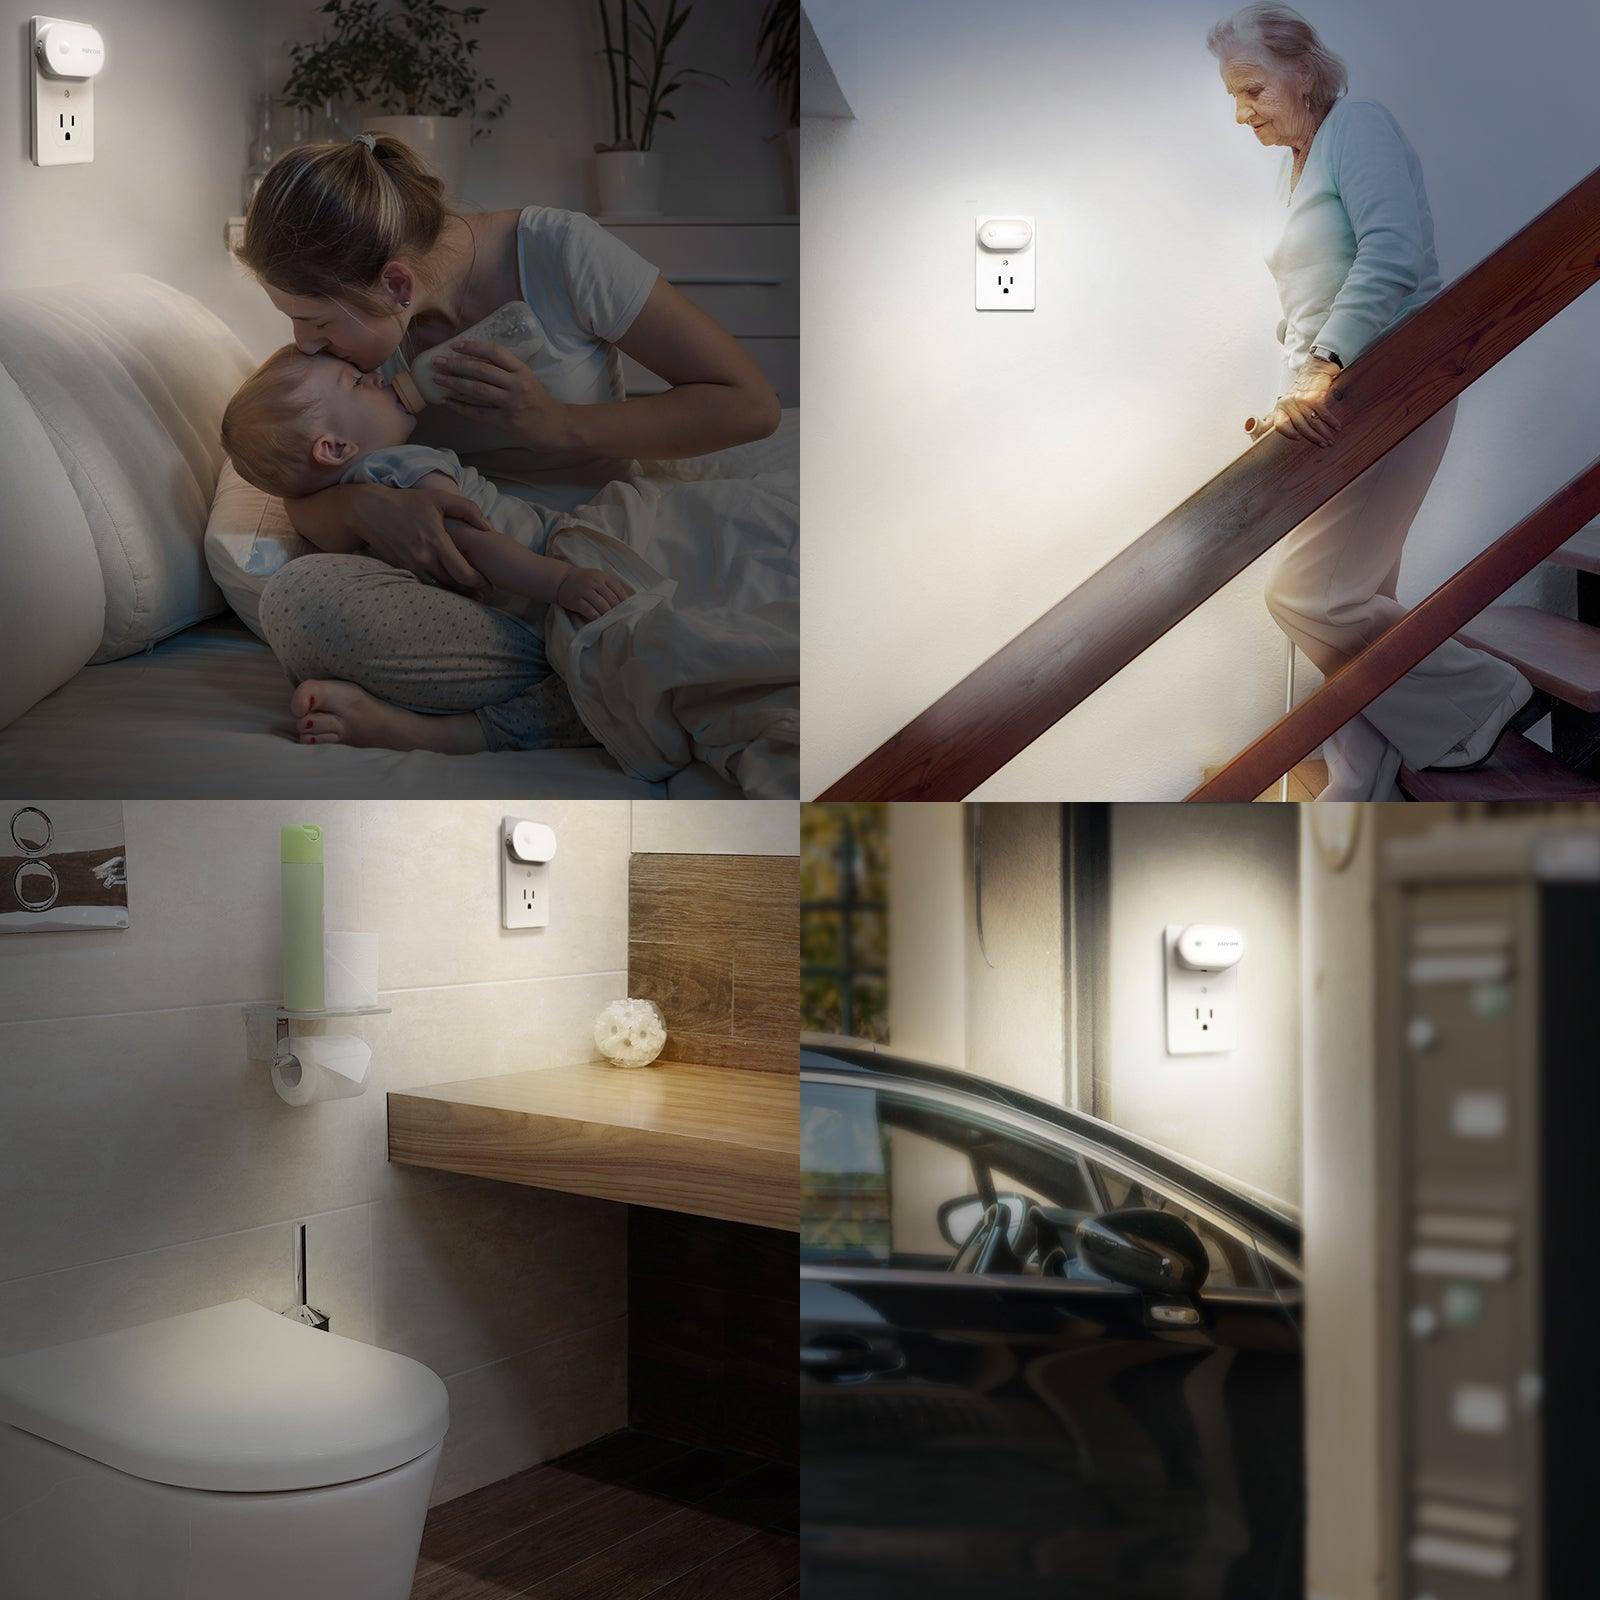 Lights For Toilet Bowl, Night Bathroom Light Motion Sensor